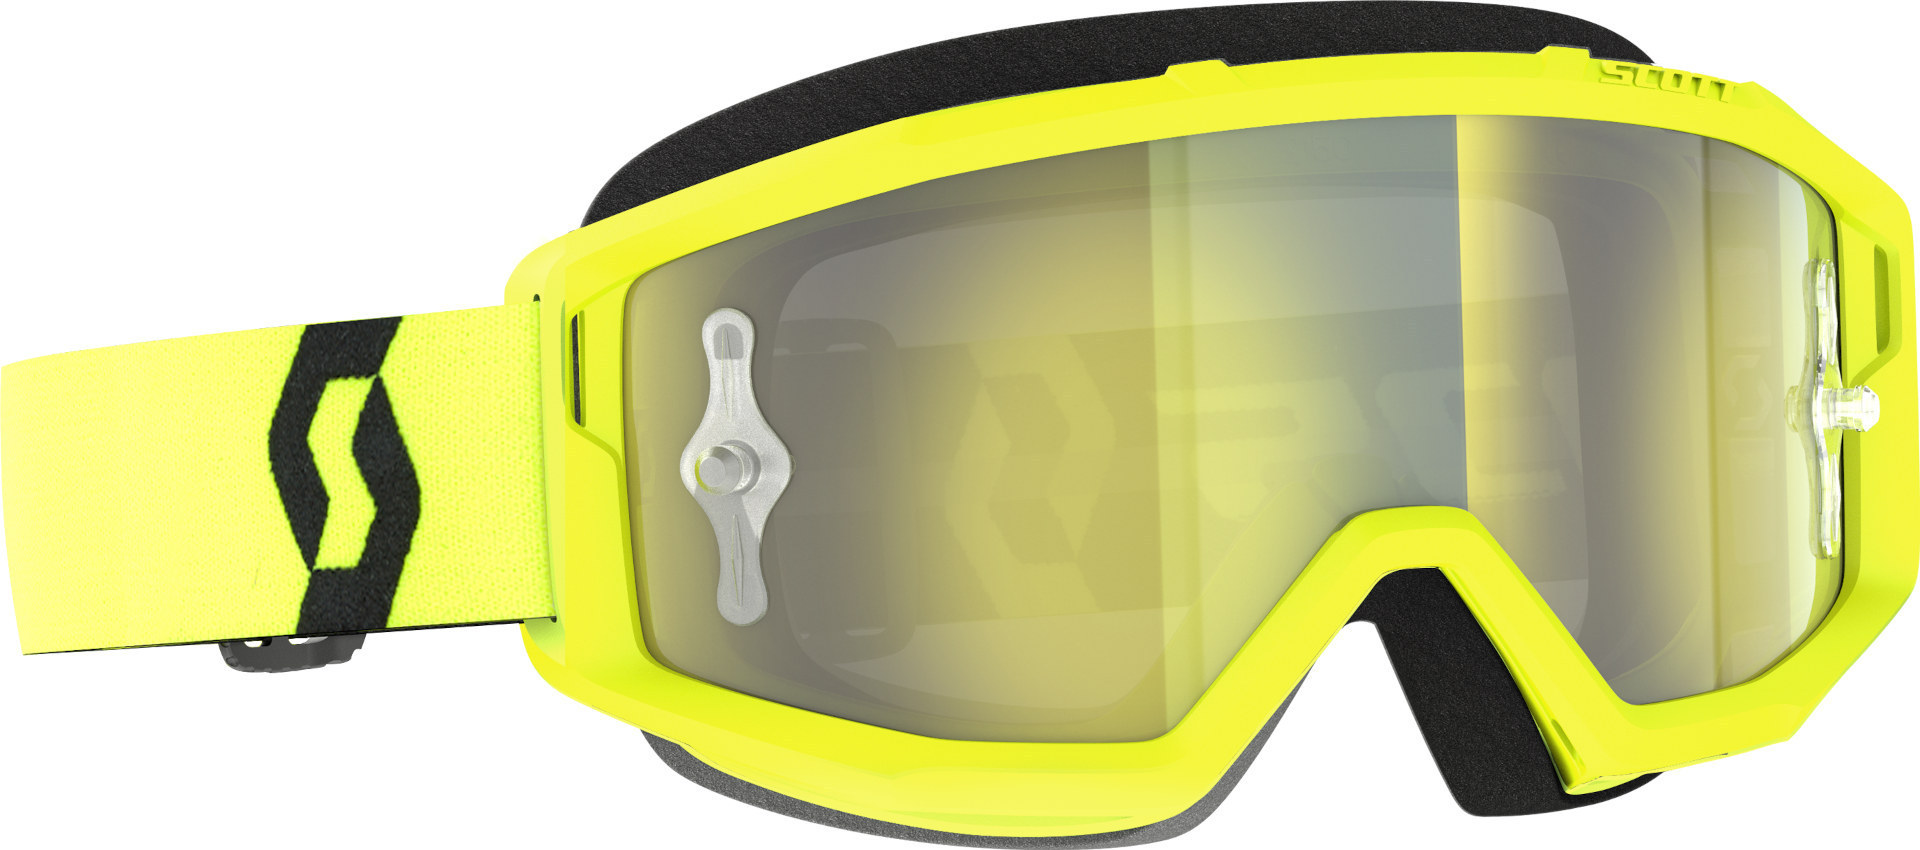 Мотоциклетные очки Scott Primal с логотипом, желтый/черный